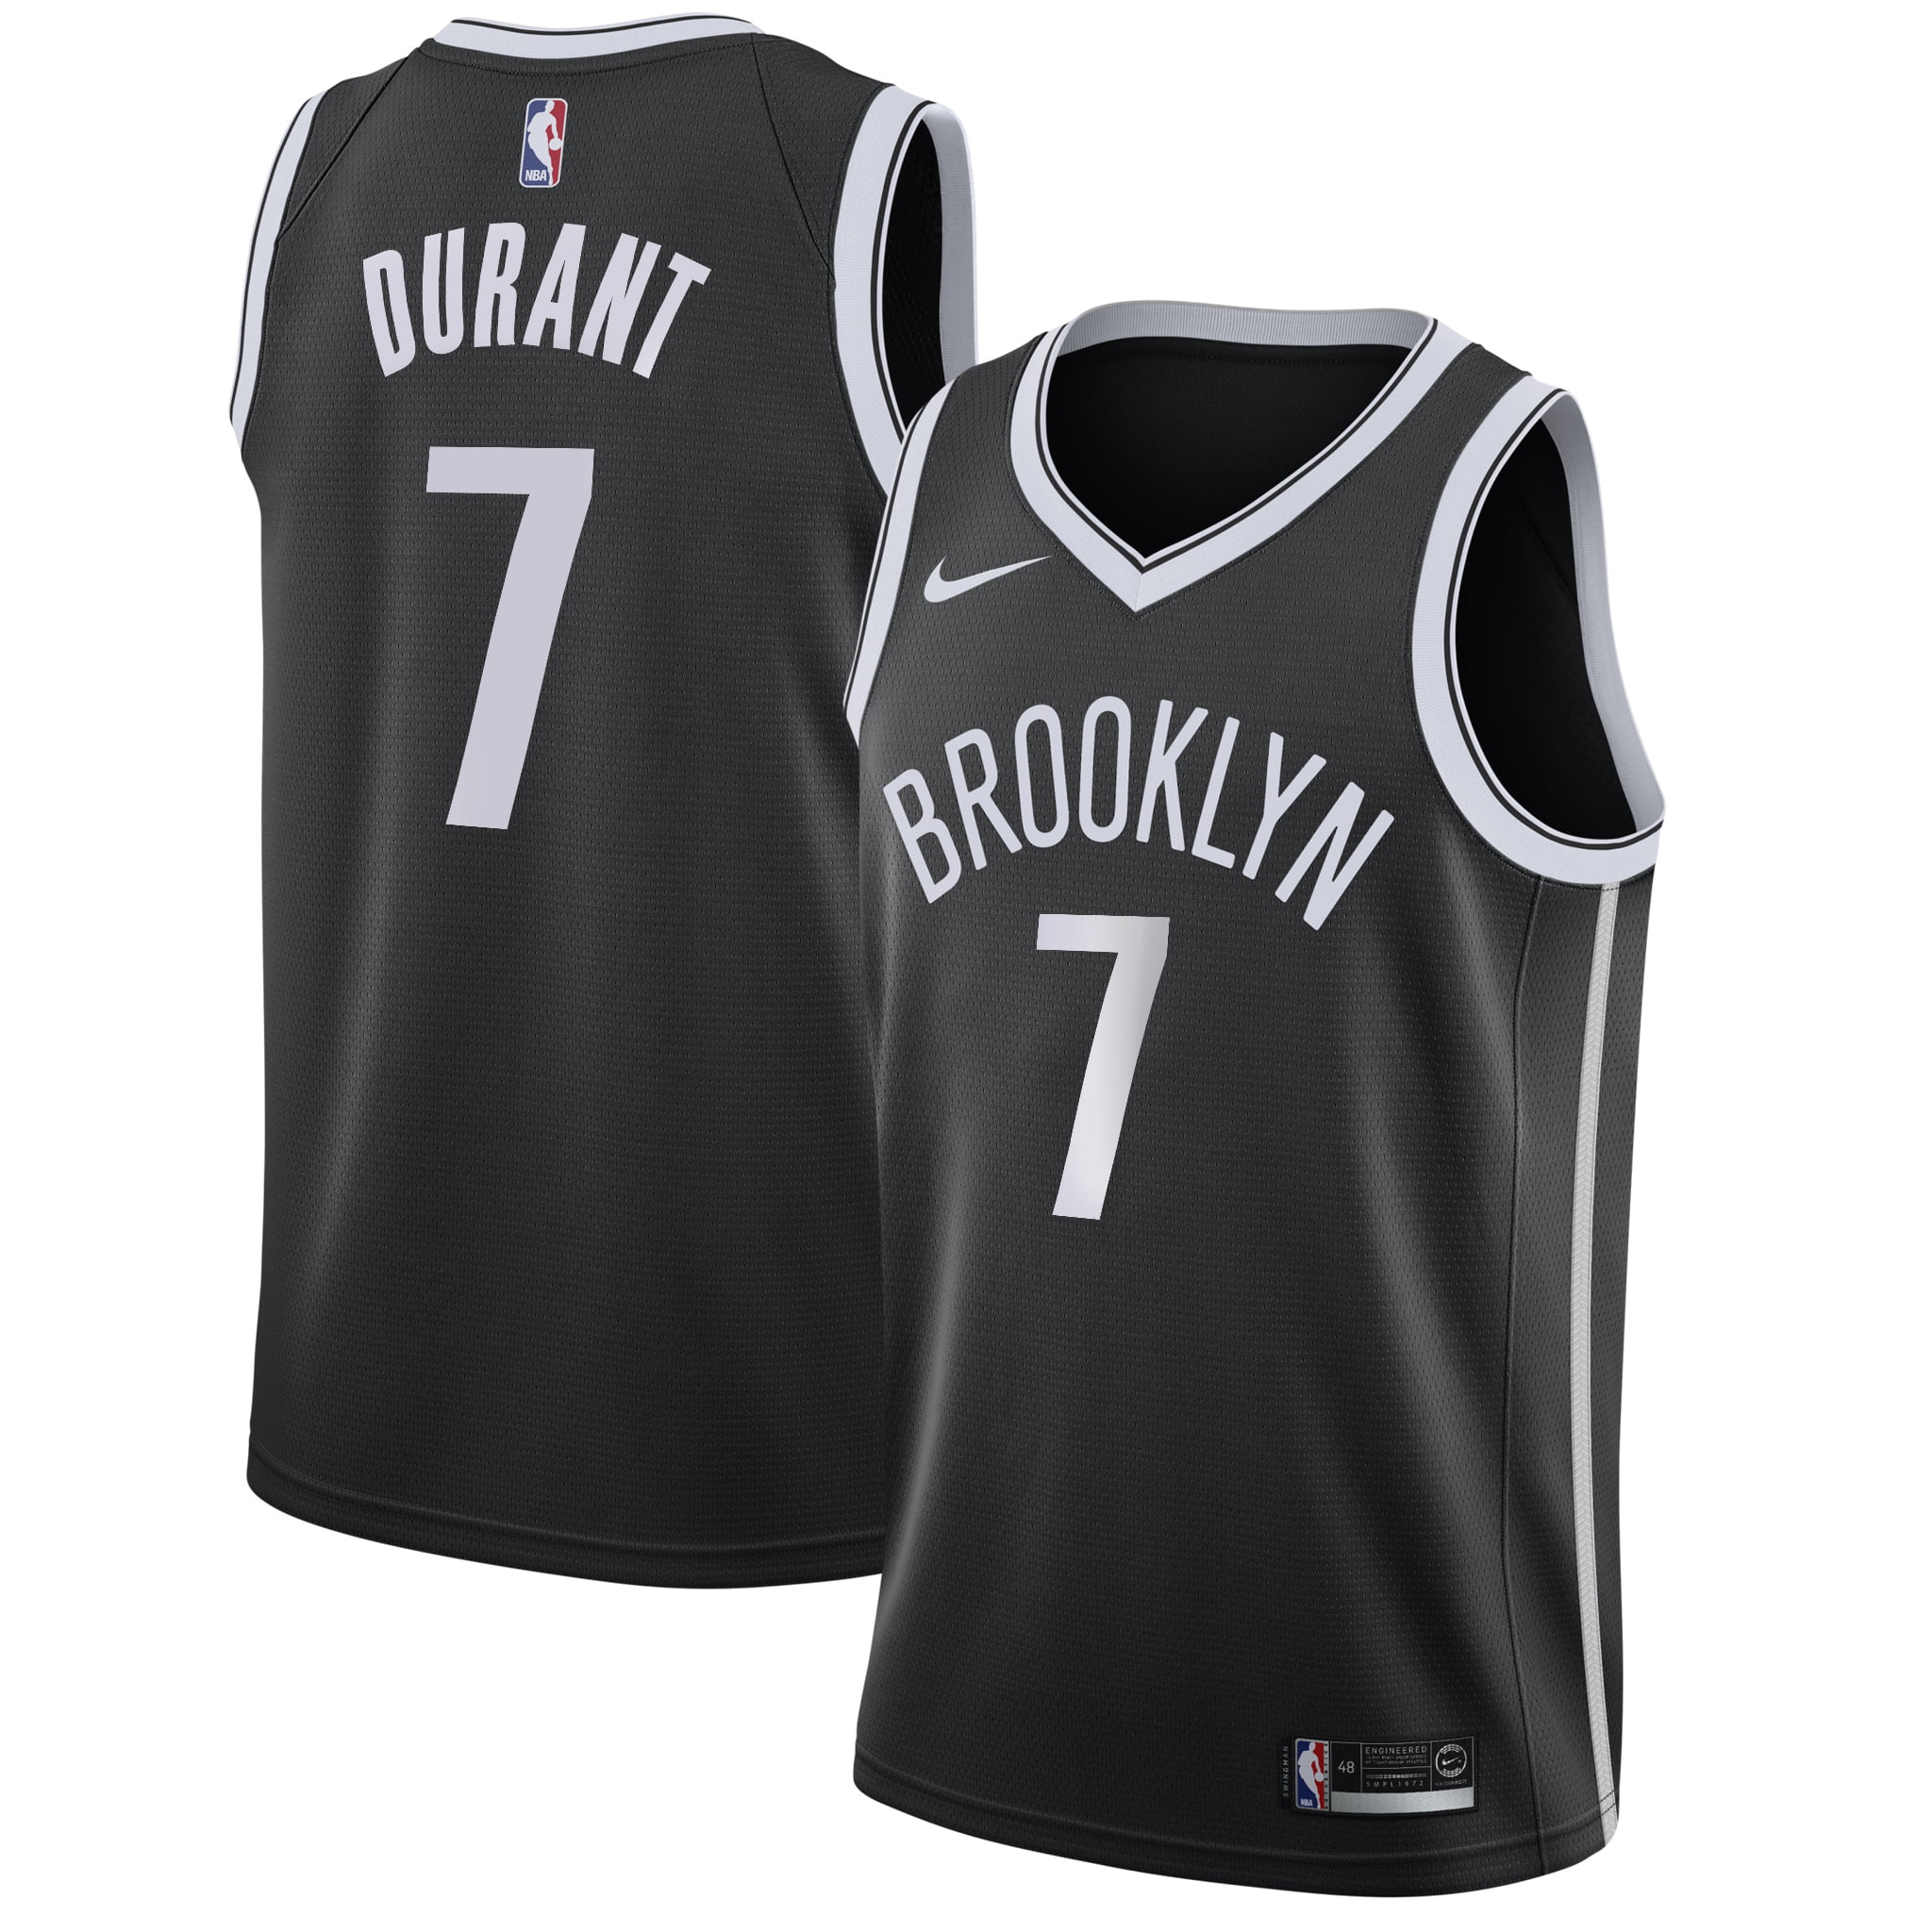 î€€Kevinî€ î€€Durantî€ Brooklyn Nets Nike 2019/20 Swingman î€€Jerseyî€ Black - Icon Edition - Walmart.com ...